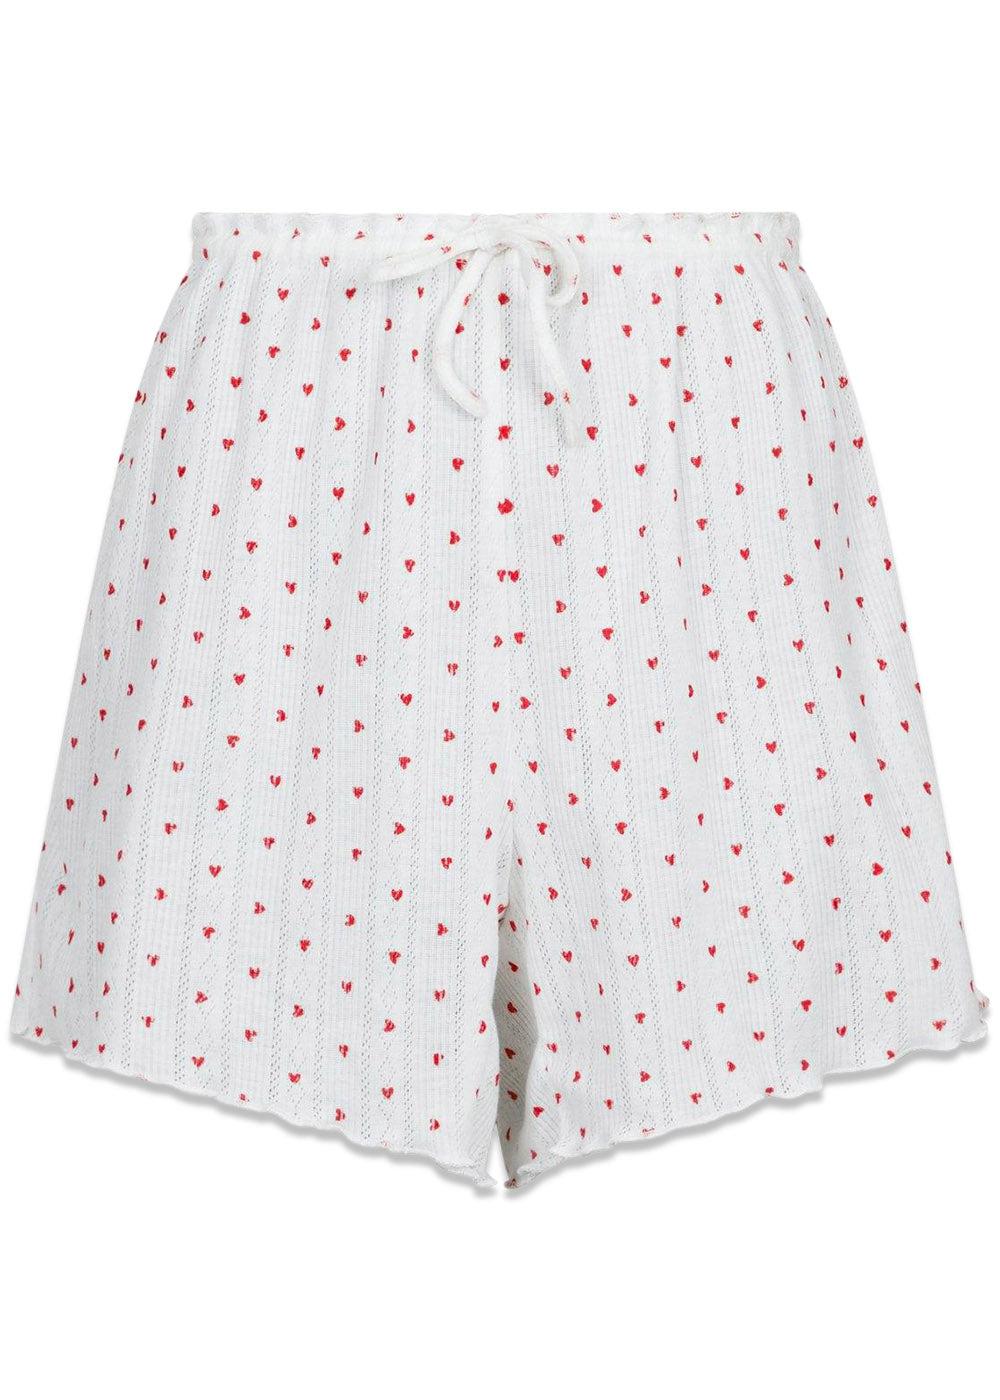 Merritt Pointelle Heart Shorts - White